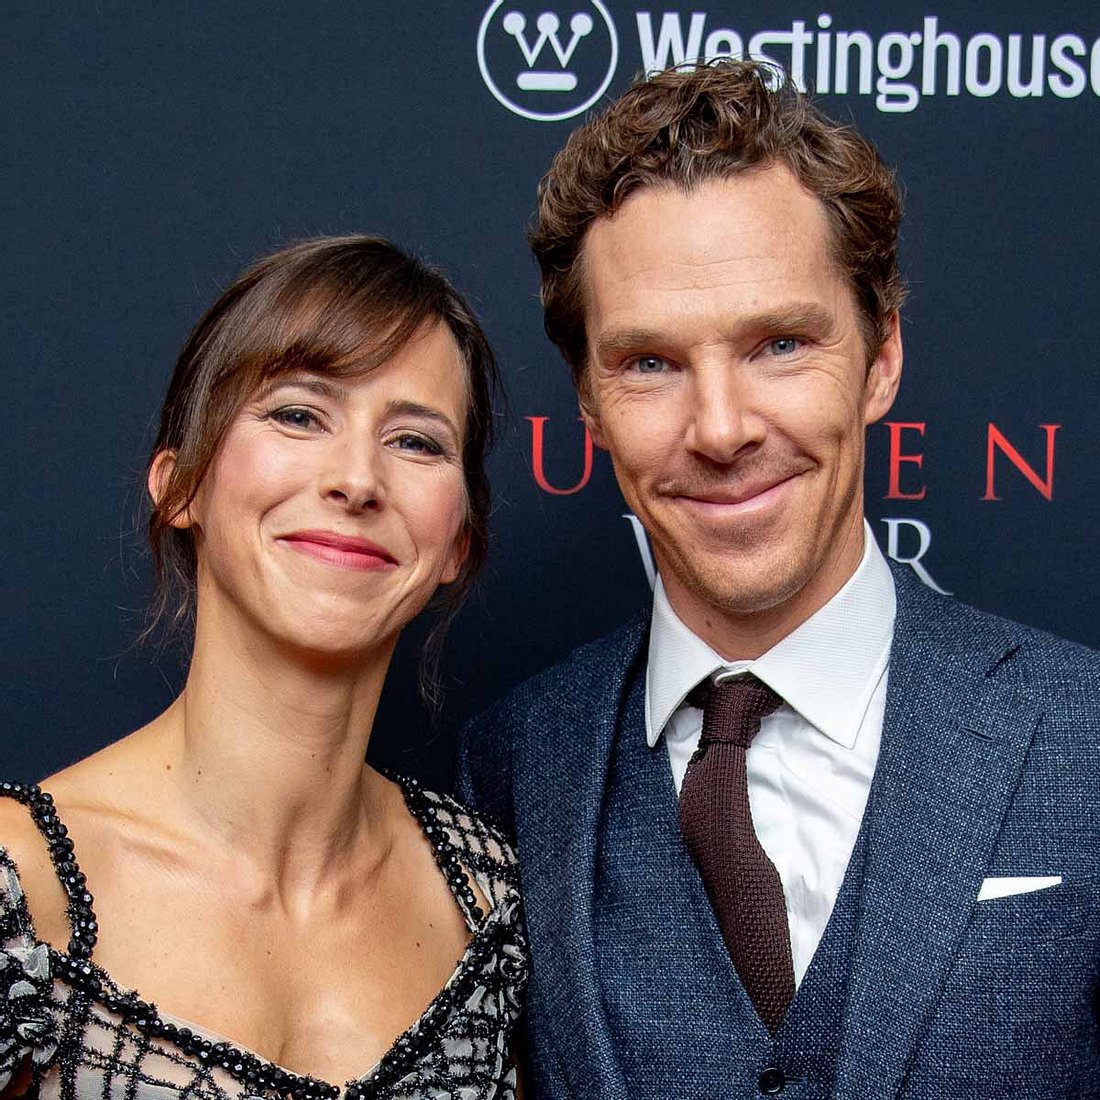 Wen die Marvel-Stars daten: Benedict Cumberbatch